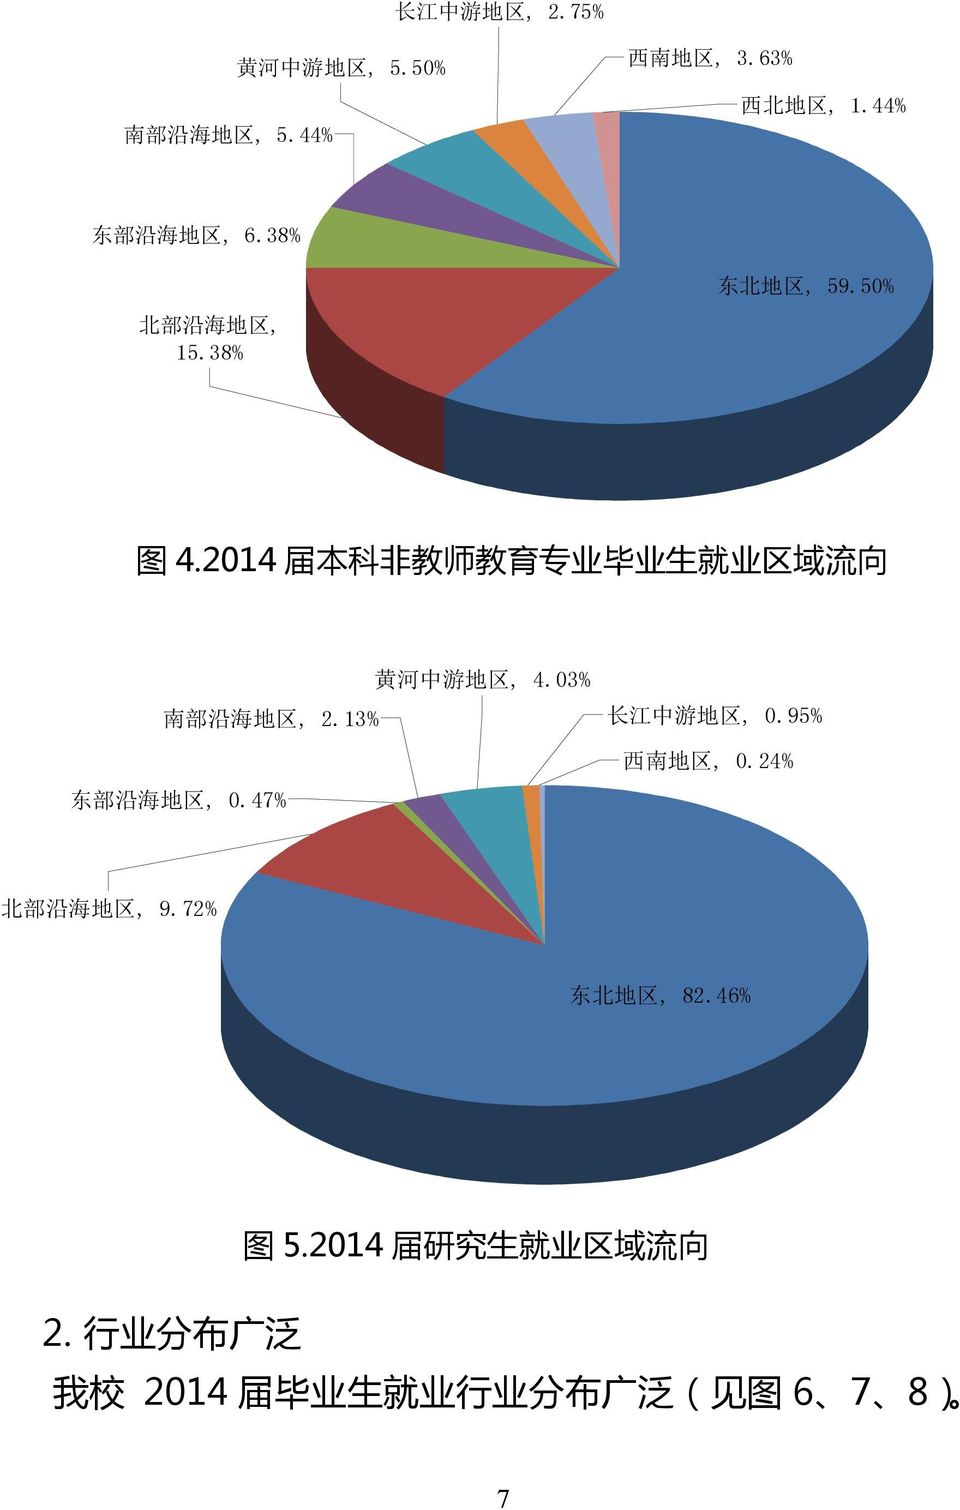 13% 东 部 沿 海 地 区, 0.47% 黄 河 中 游 地 区, 4.03% 长 江 中 游 地 区, 0.95% 西 南 地 区, 0.24% 北 部 沿 海 地 区, 9.